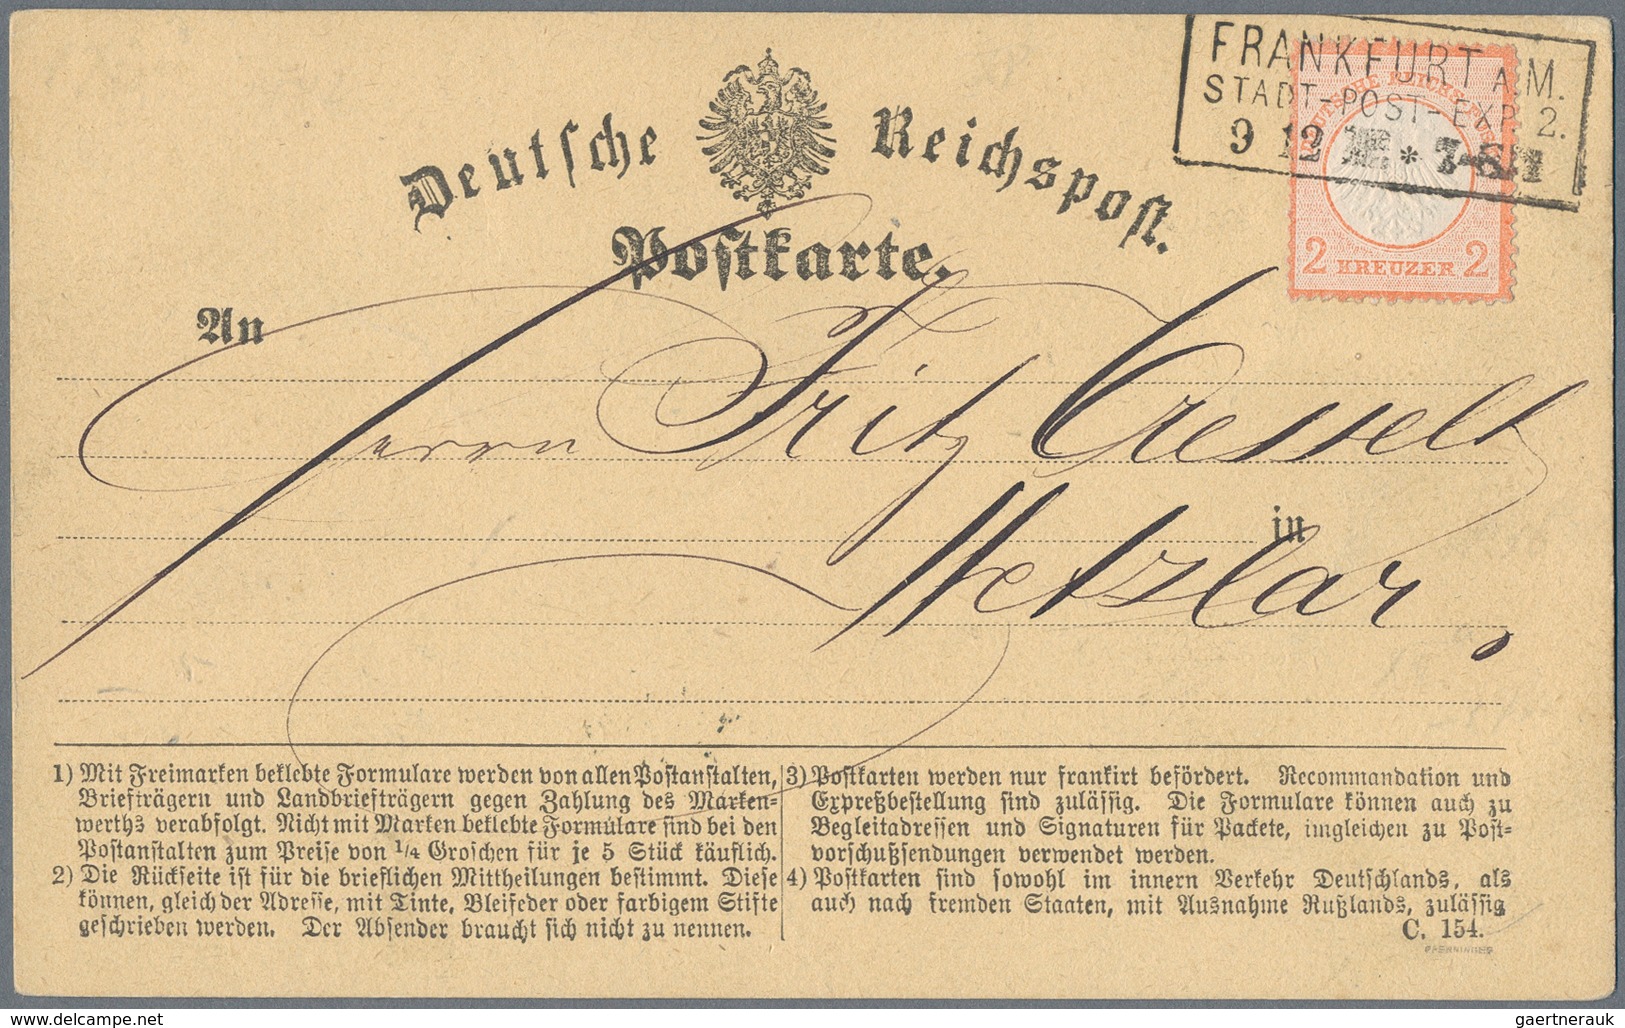 Deutsches Reich - Brustschild: 1872/1874, reichhaltiger Posten von rund 140 Belegen, dabei Farb- und